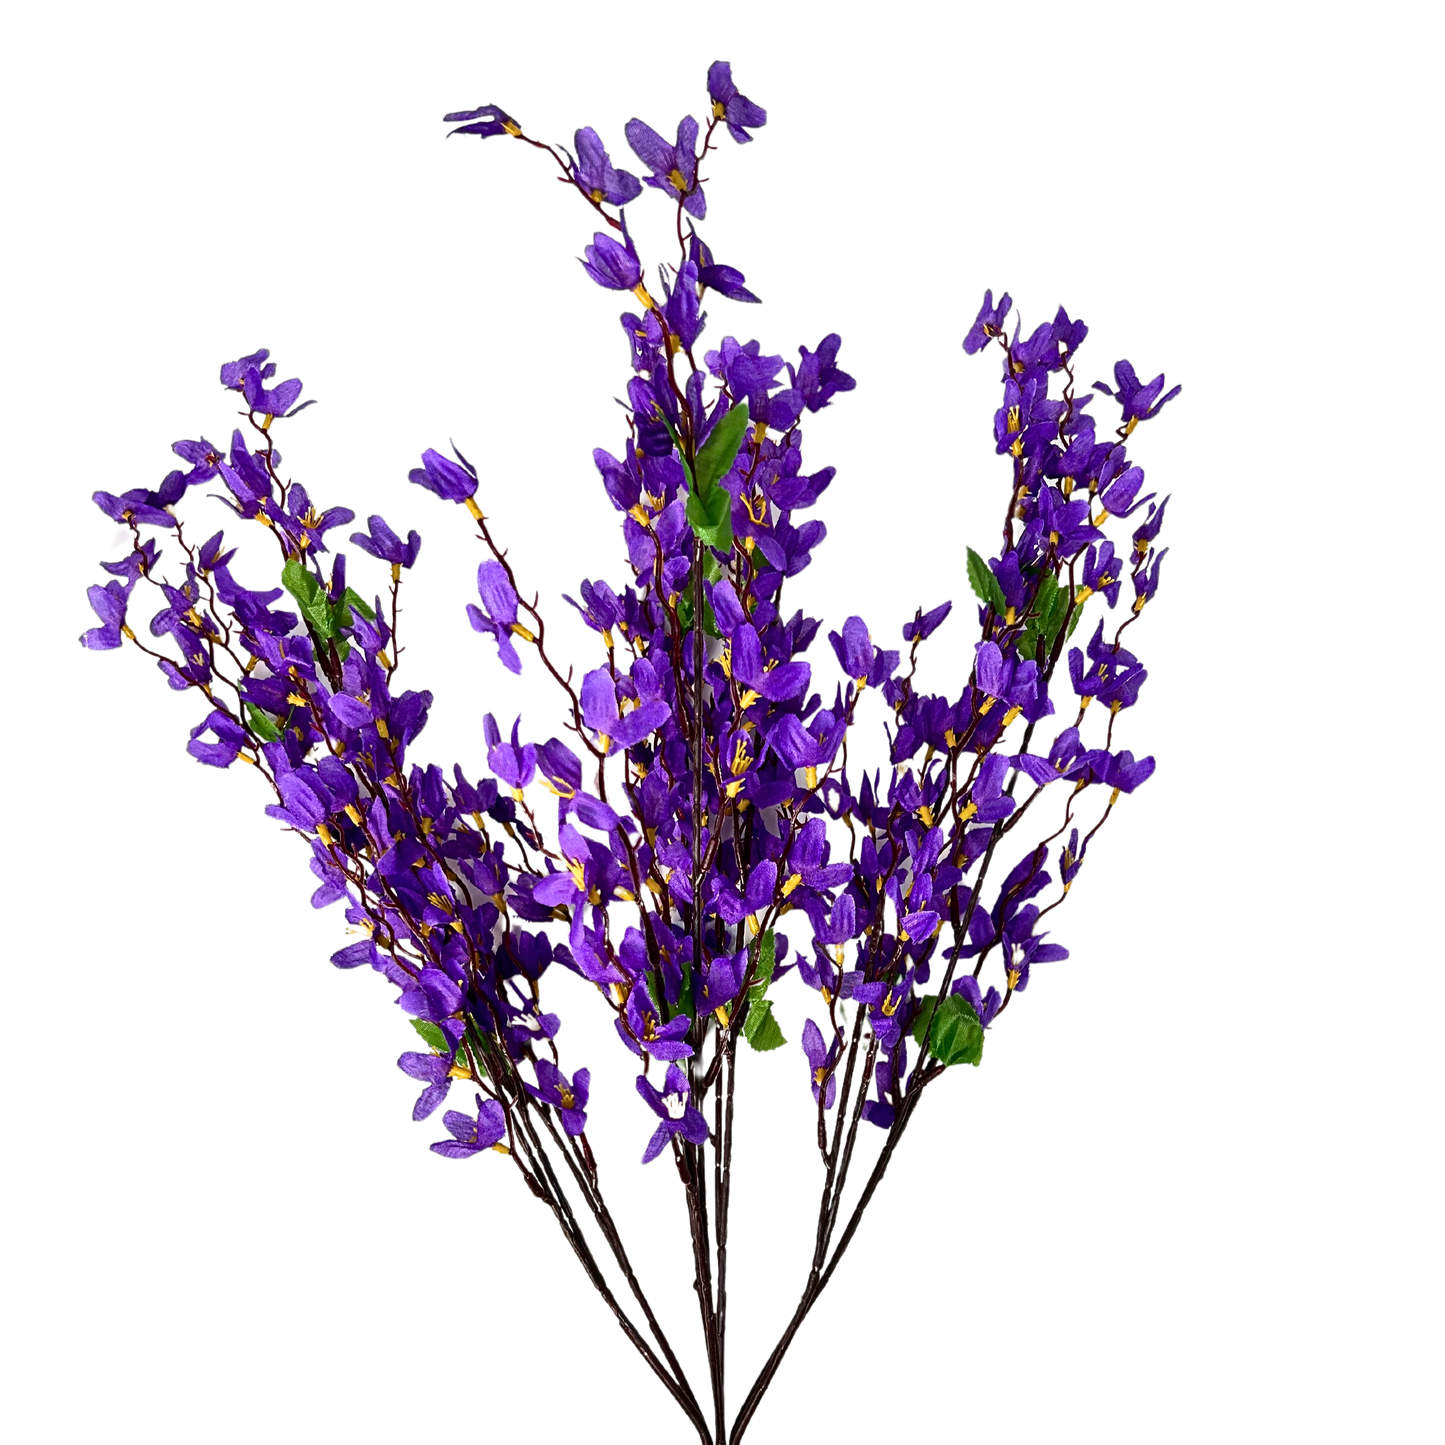 Star Blossom Bush x 7 - 24” - Purple |BYE